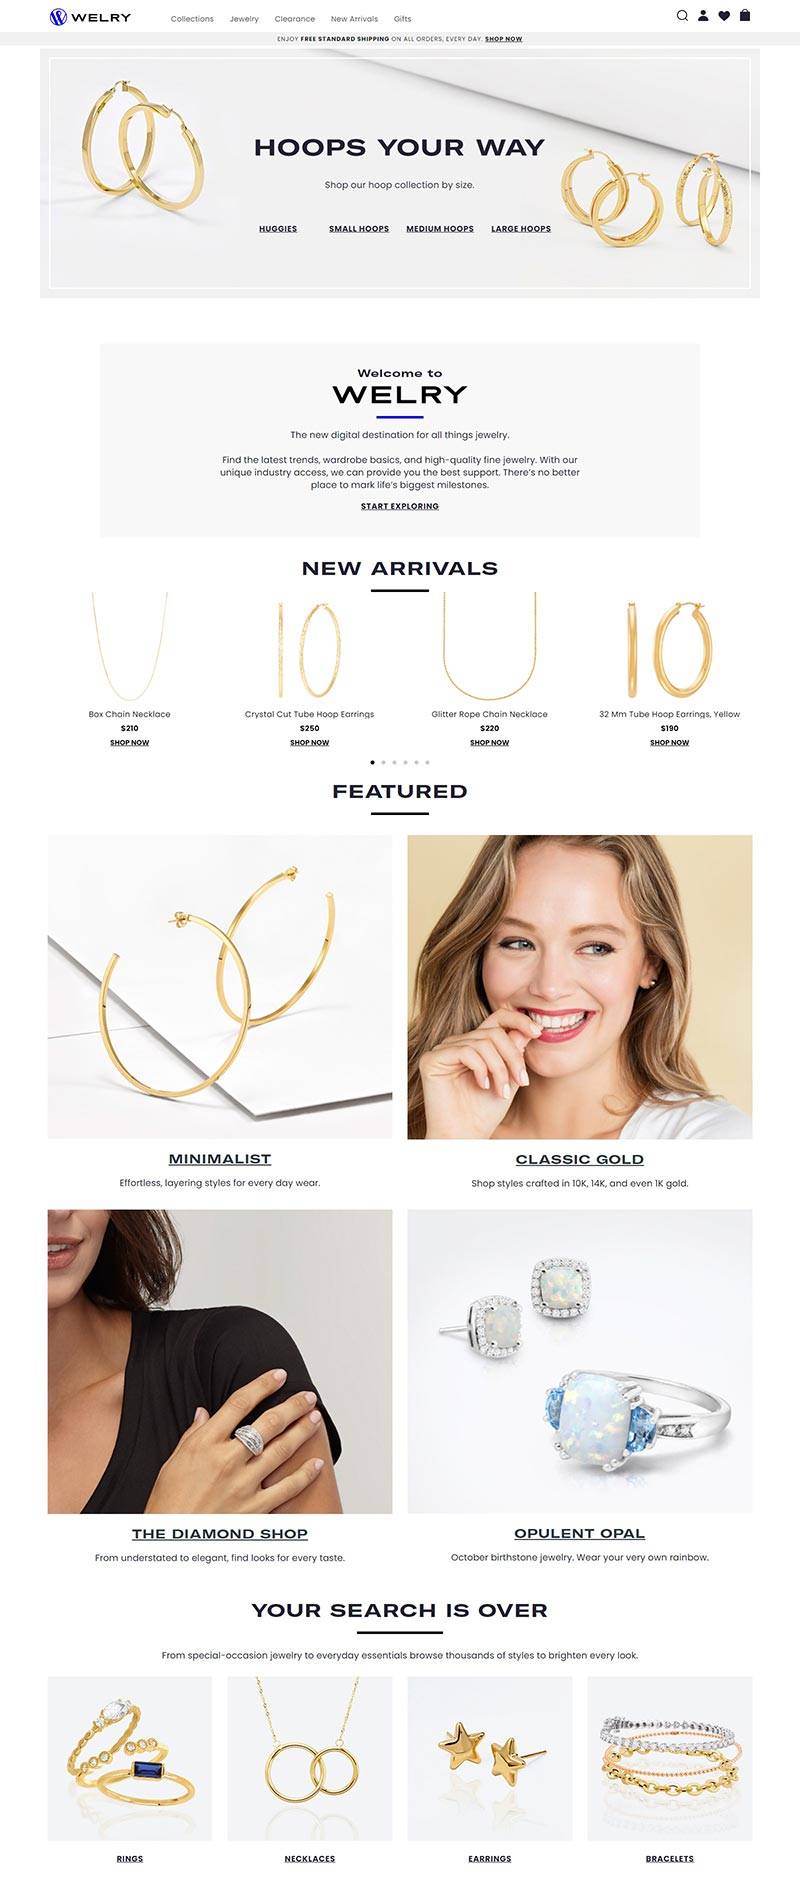 Jewelry.com 美国珠宝品牌购物网站